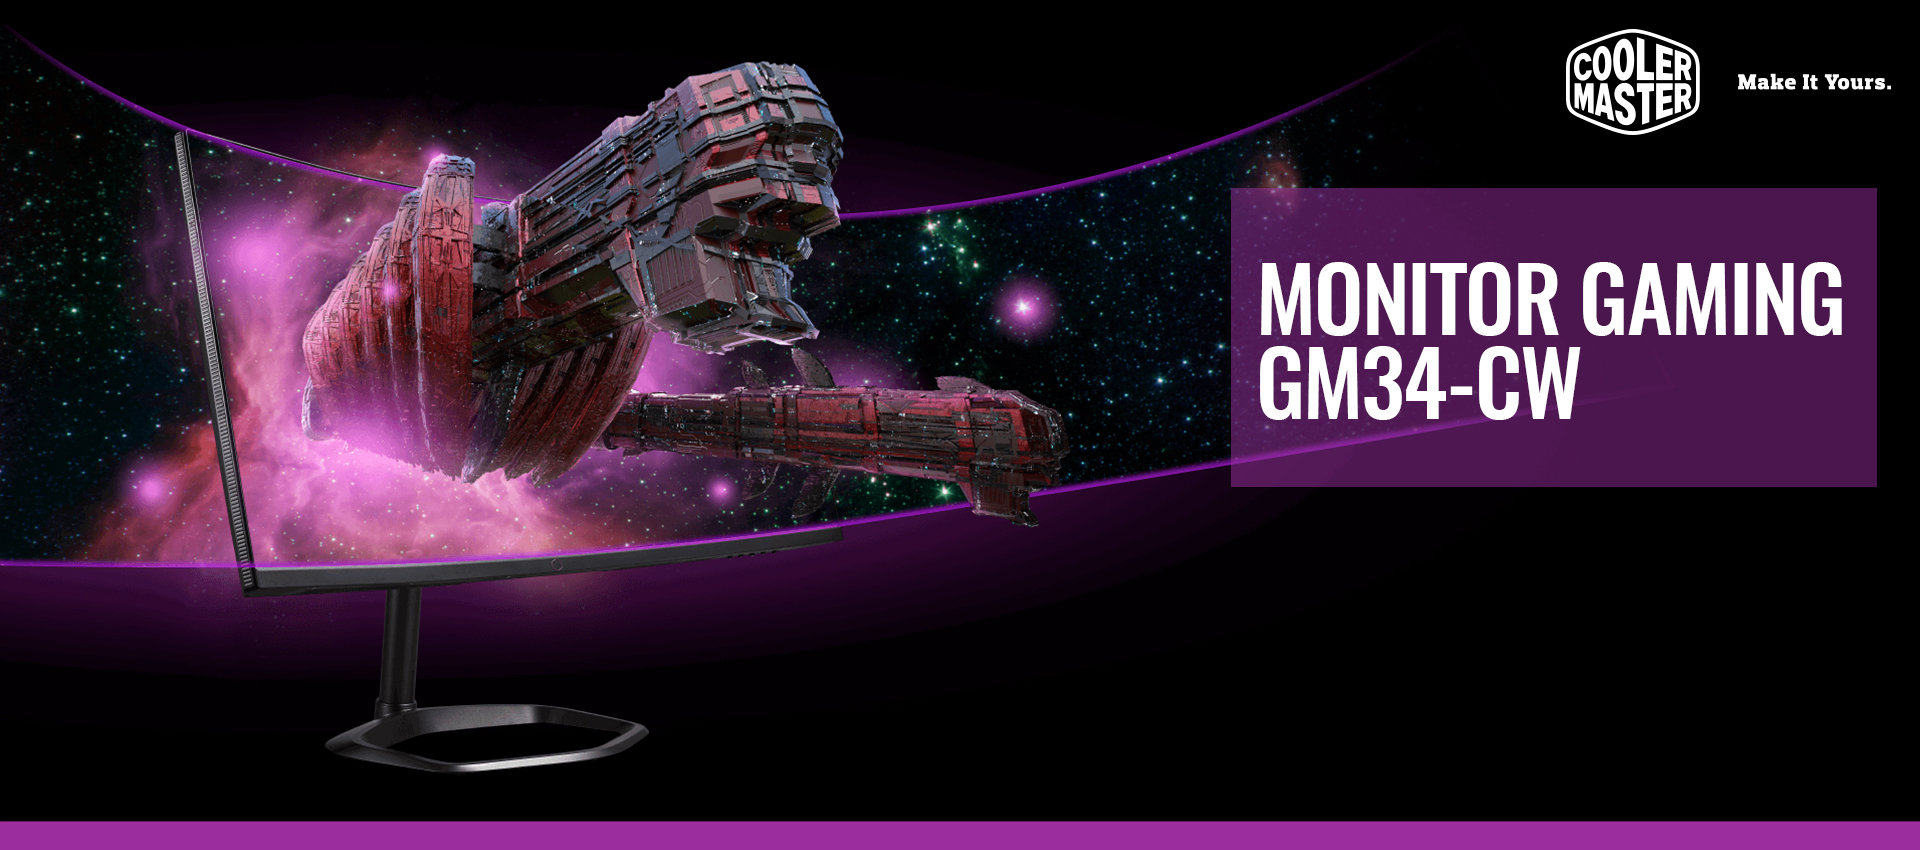 Monitor Gaming GM34-CW